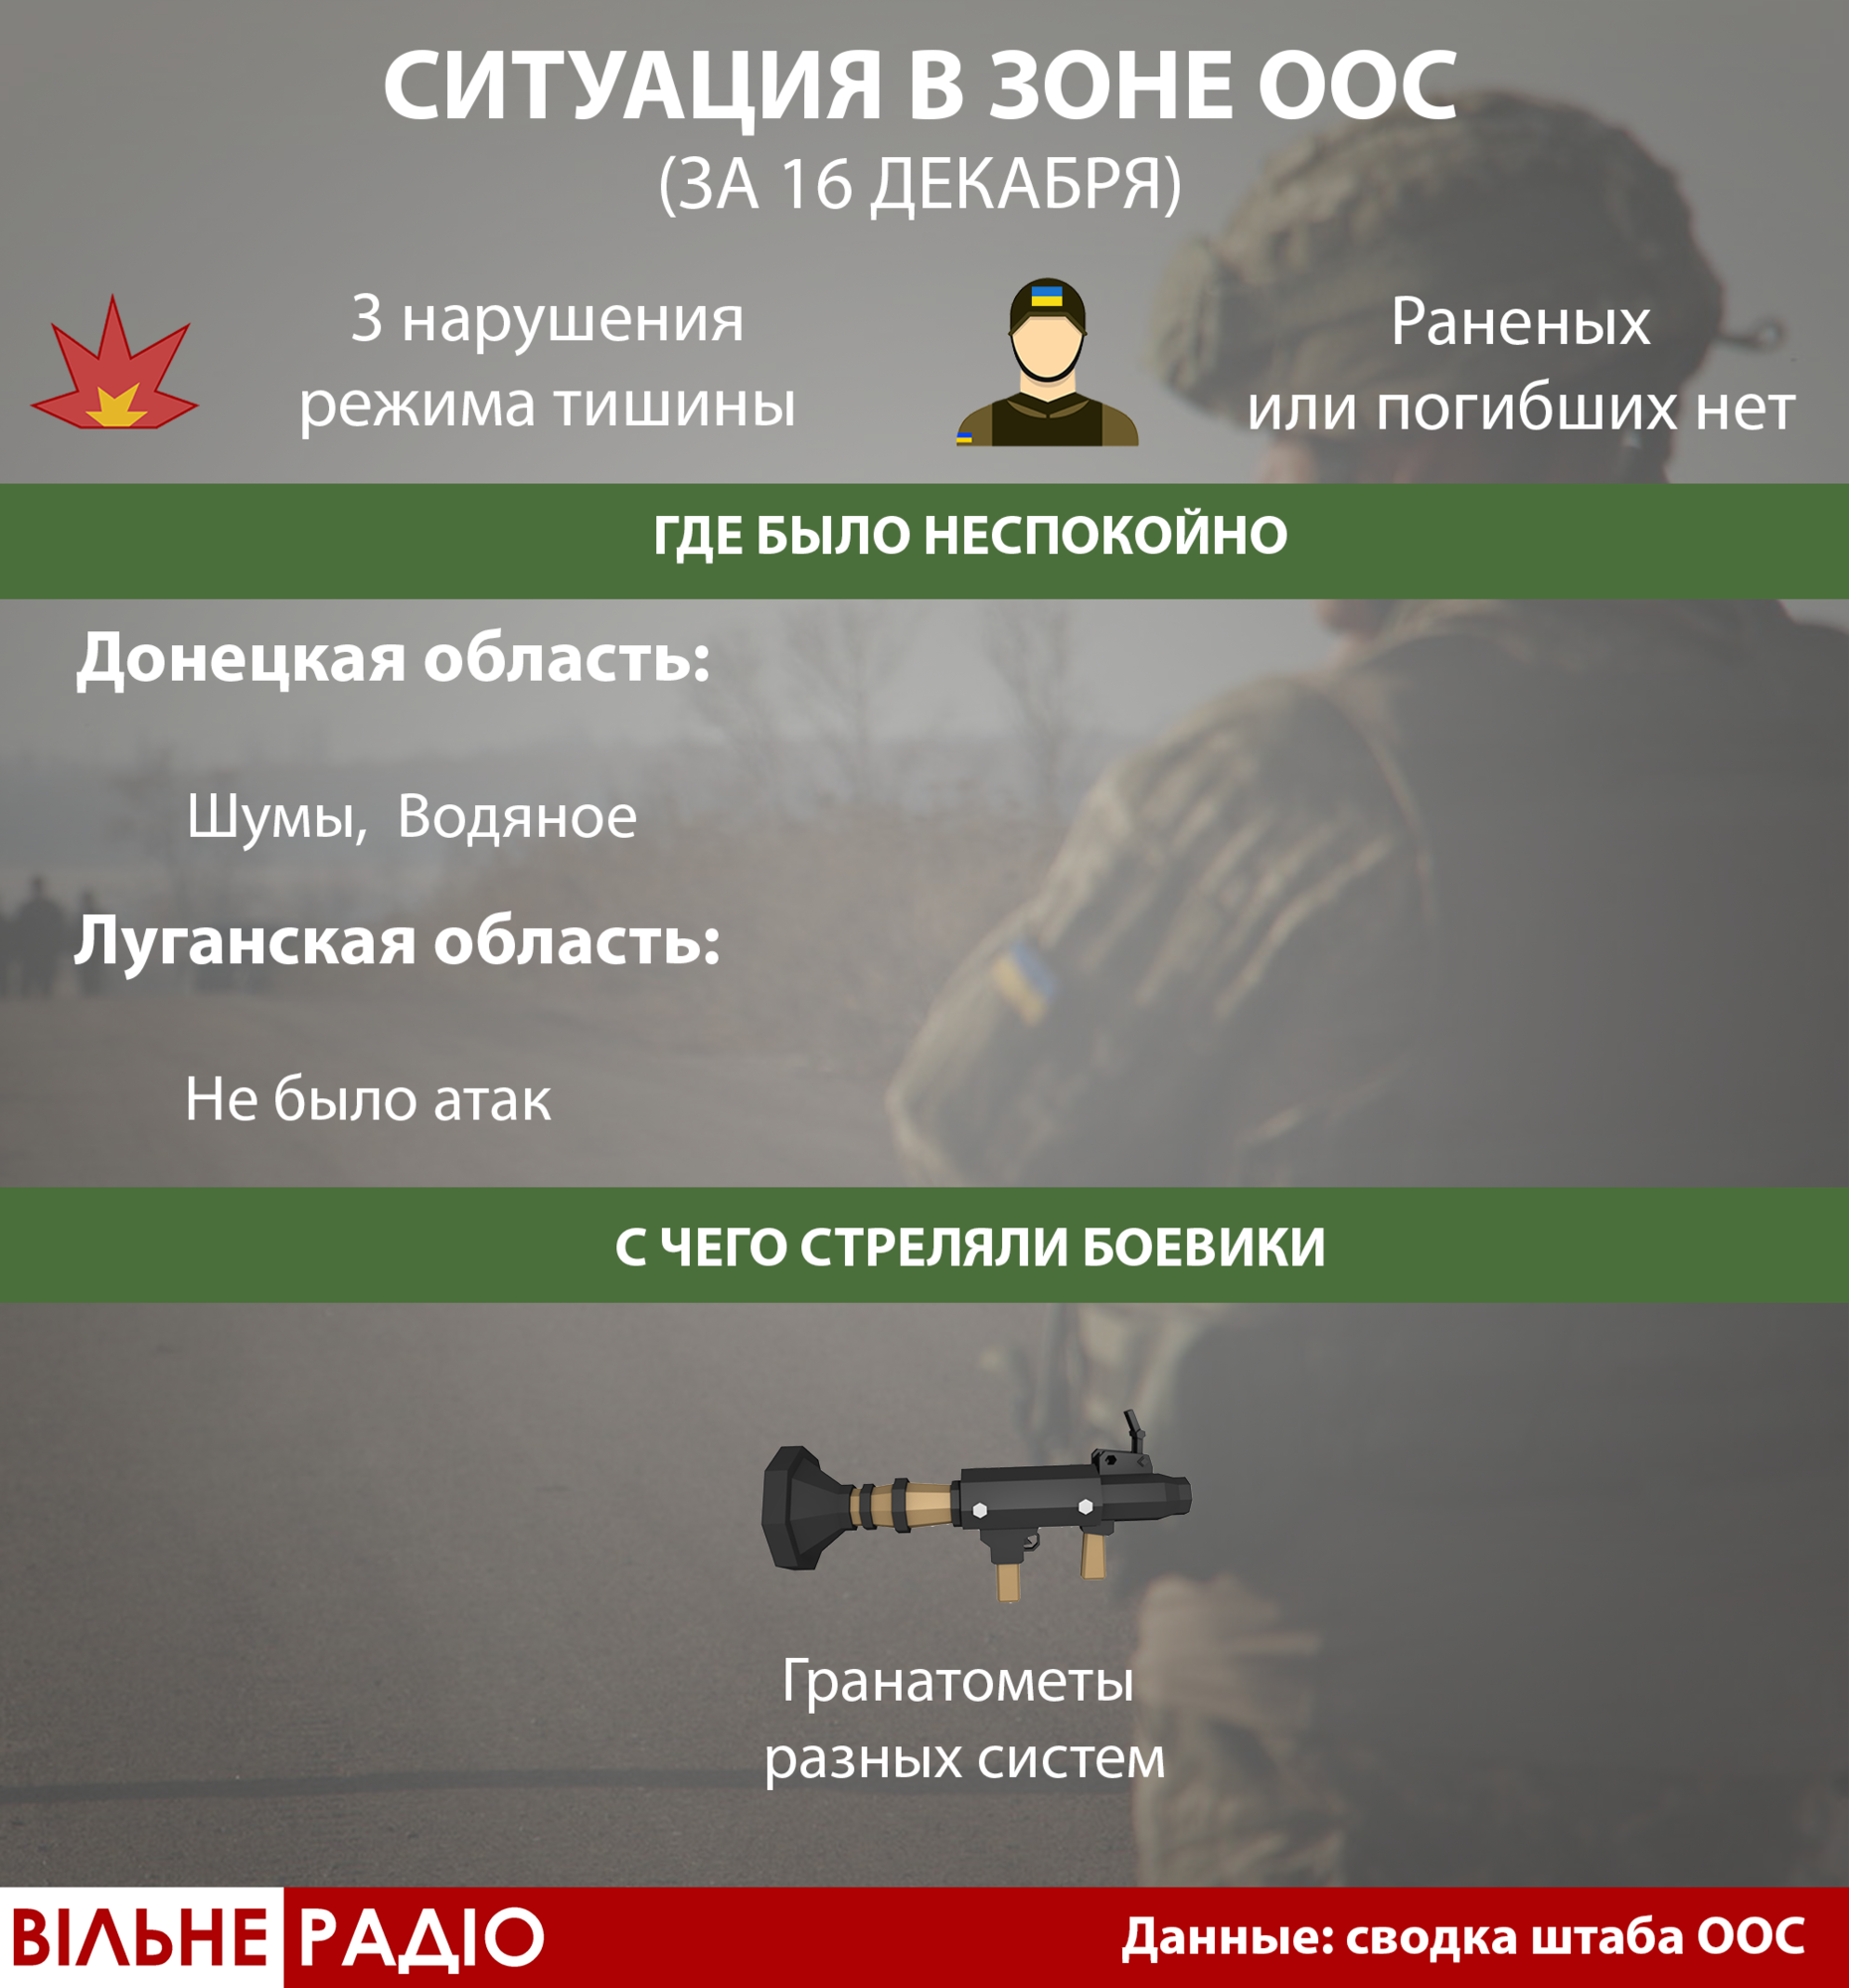 3 атаки за сутки. Где и с чего стреляли боевики на Донбассе 16 декабря (Инфографика) 1